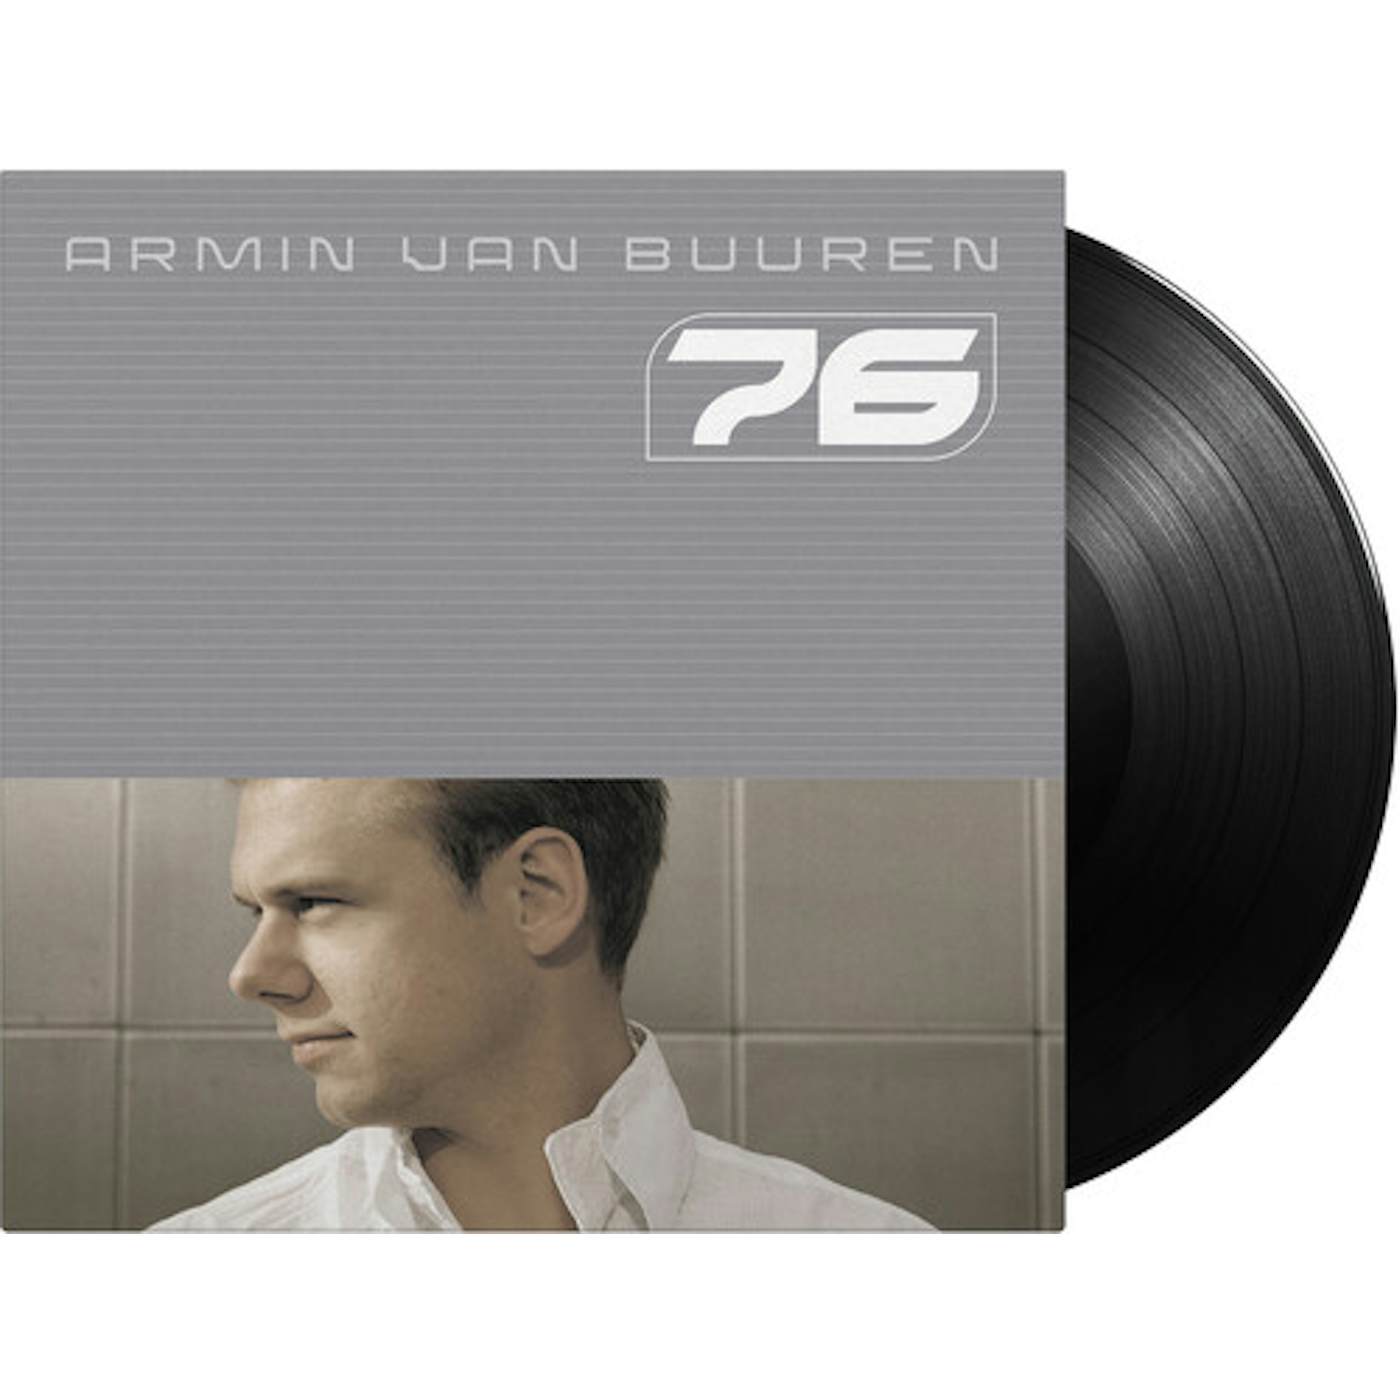 Armin van Buuren 76 Vinyl Record